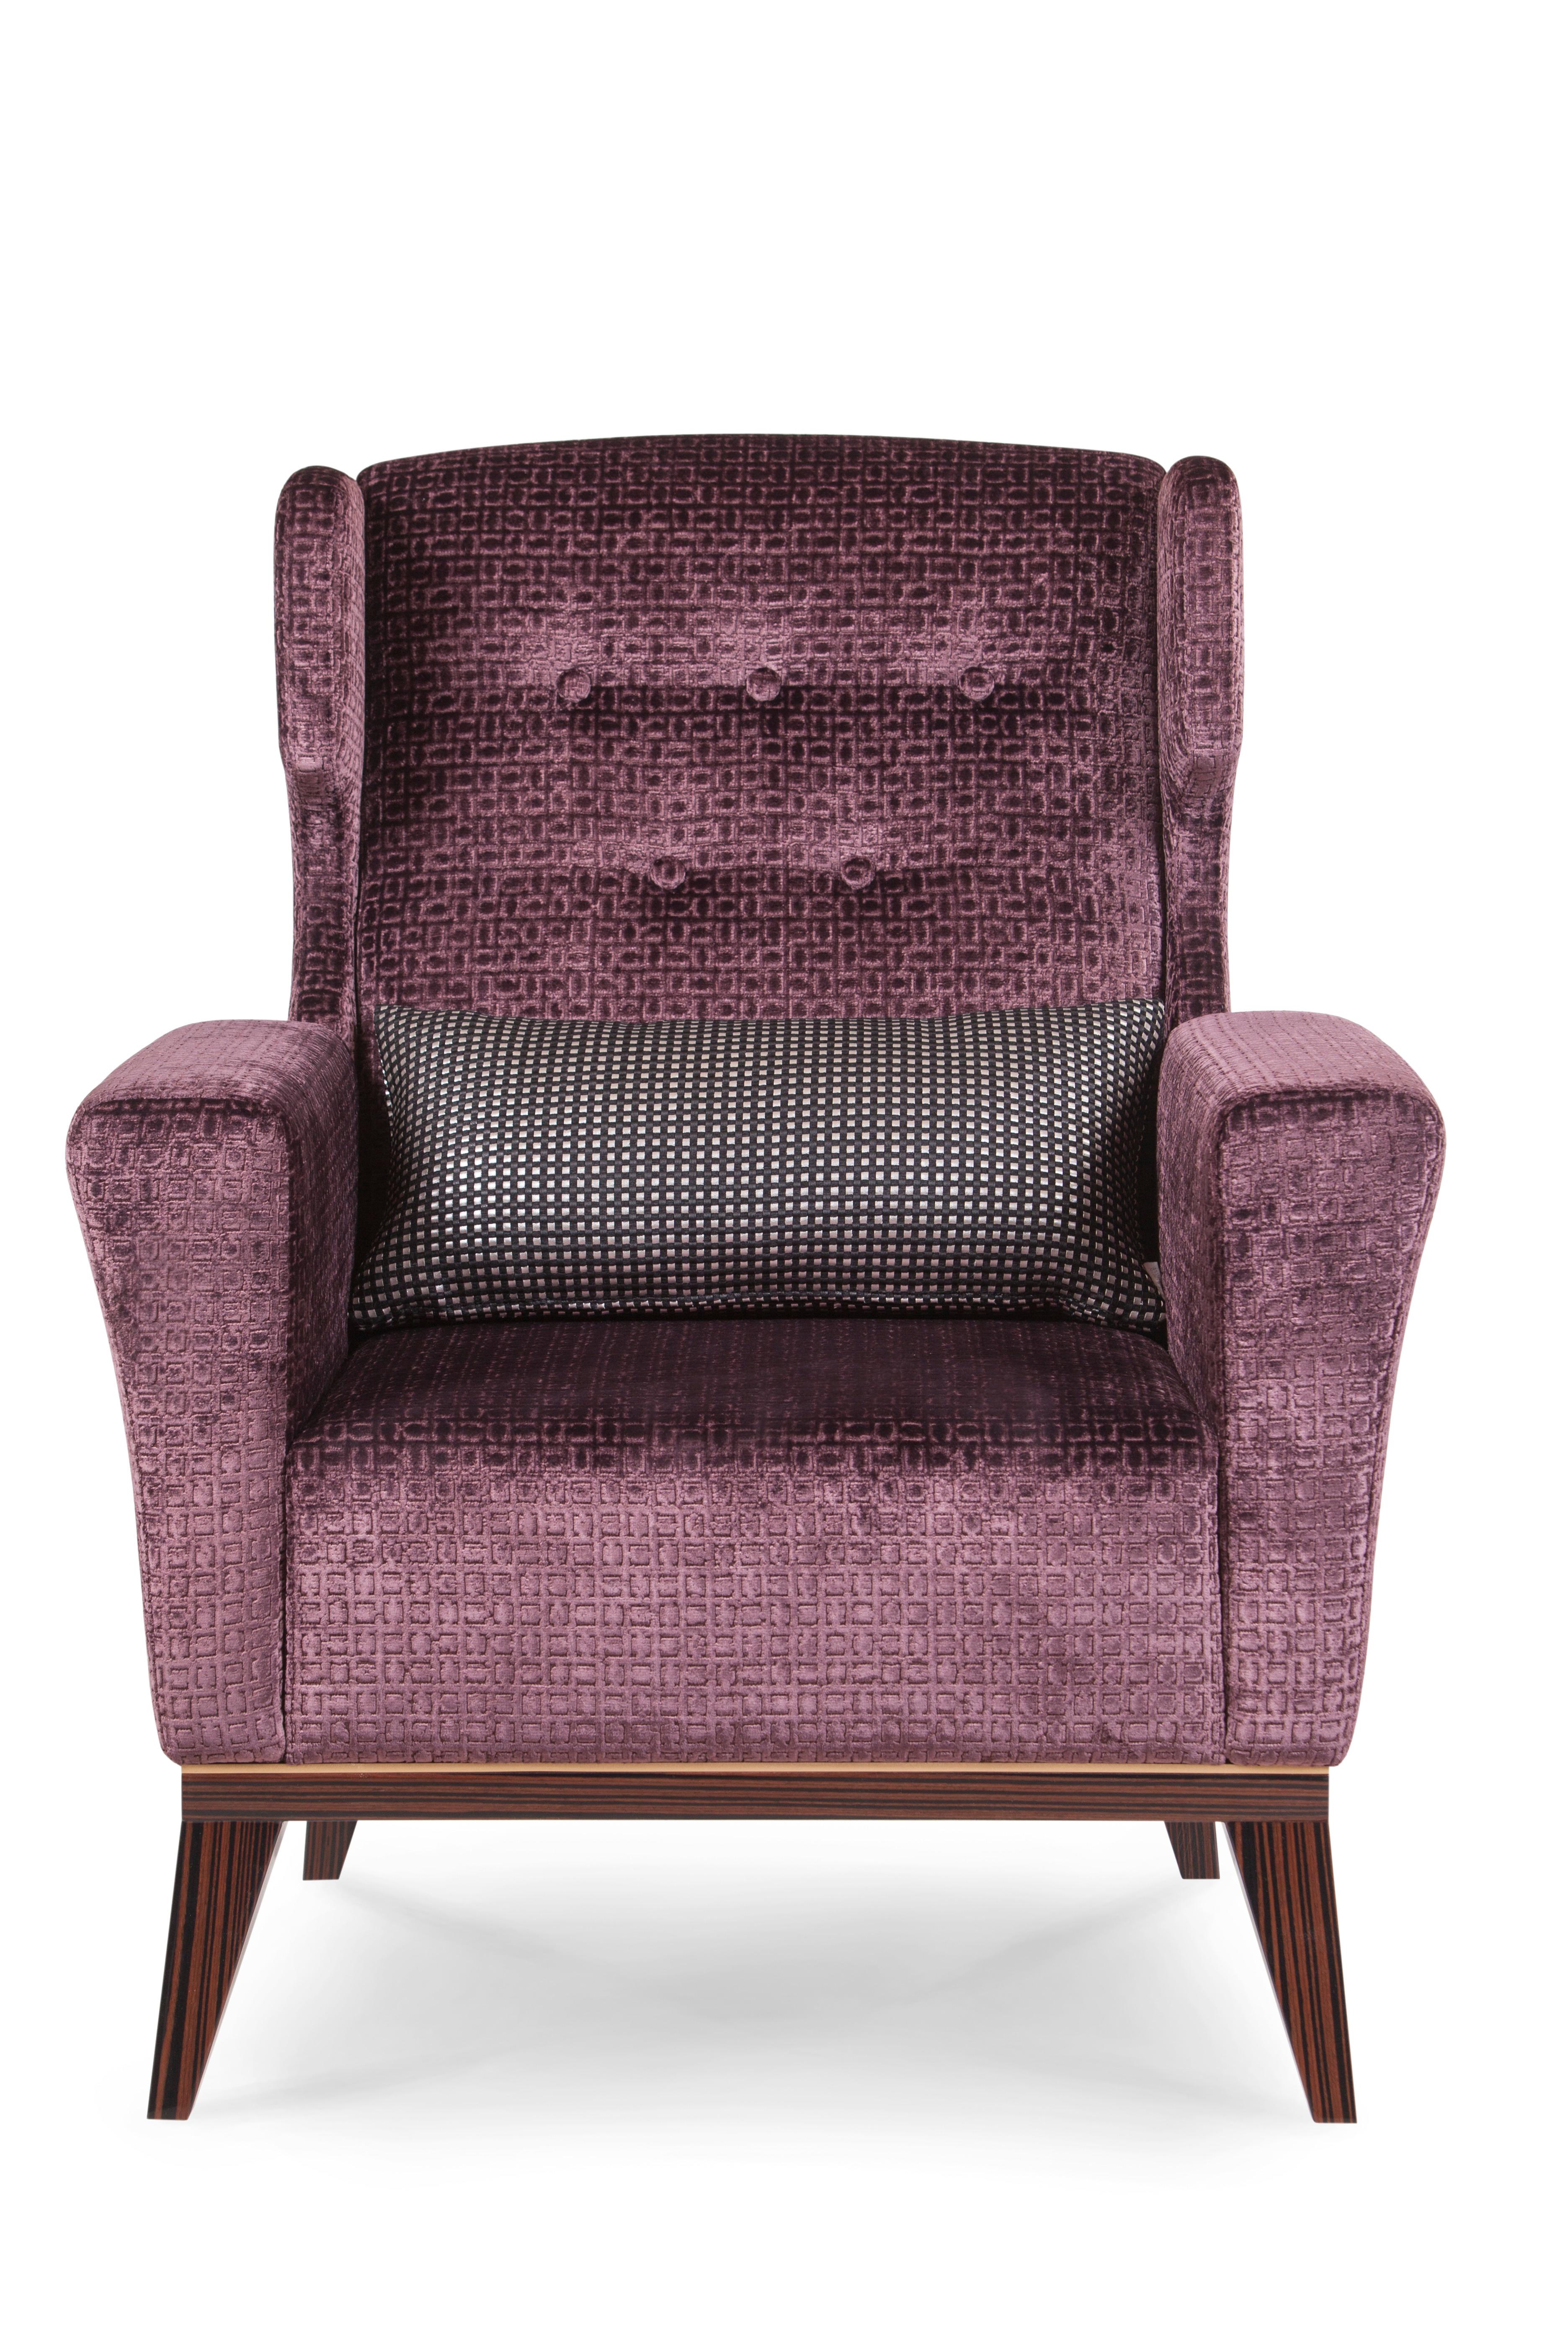 Genebra Sessel, Modern Collection'S, handgefertigt in Portugal - Europa von GF Modern.

Der Genebra-Sessel wurde entworfen, um Ihrem Wohnzimmer einen raffinierten Vintage-Look zu verleihen. Der Sessel ist mit auberginefarbenem Samt gepolstert und